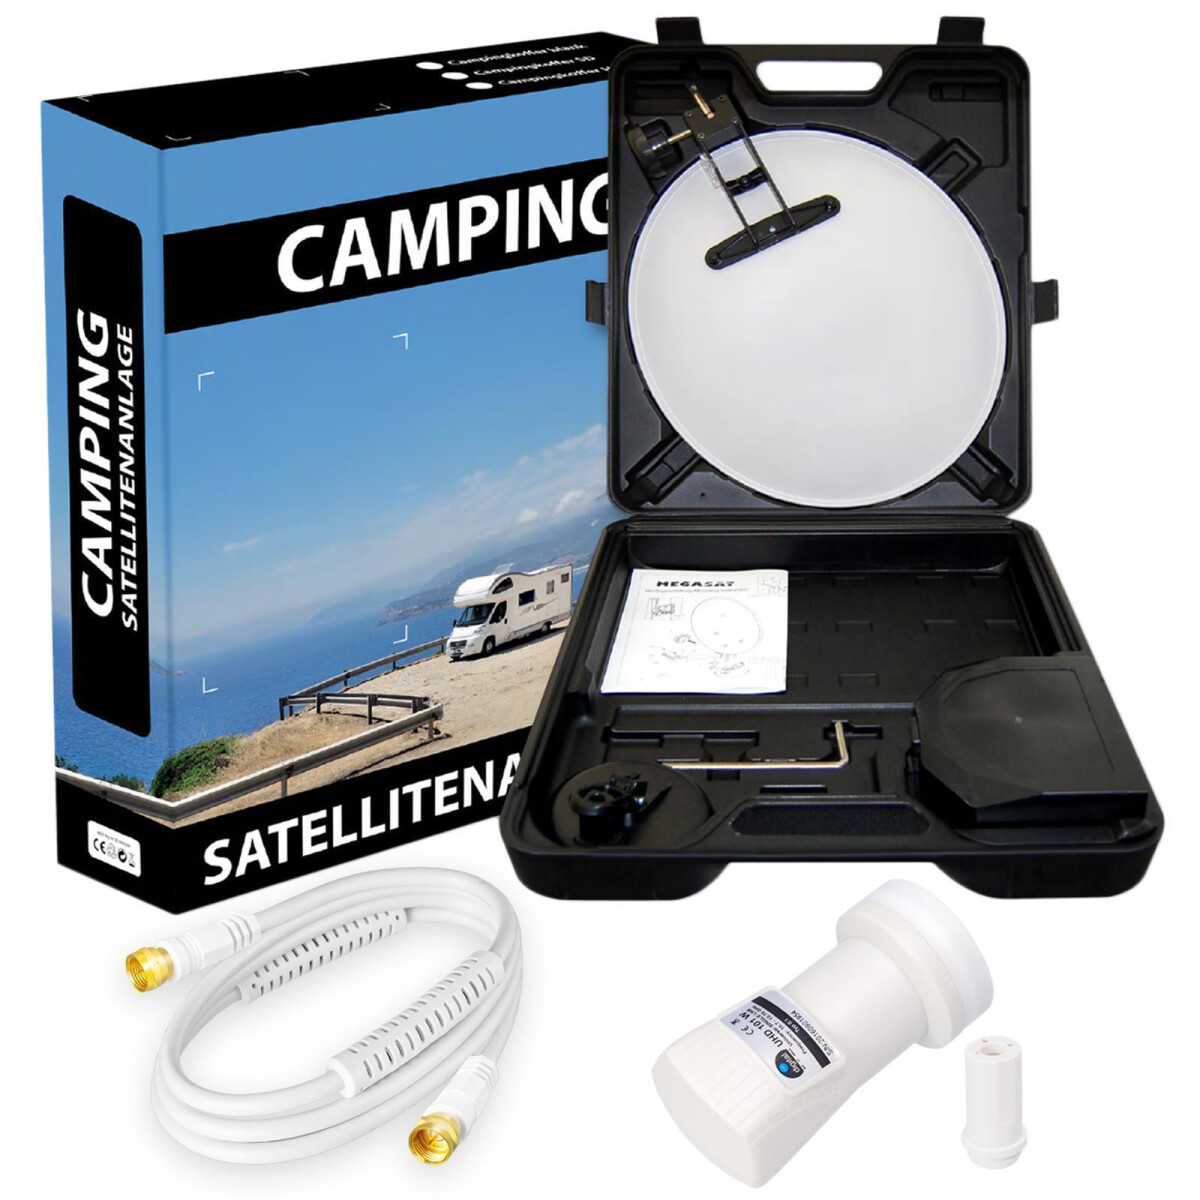 Satellitenanlage für Camping mit Single LNB und Anschlusskabel, 34,99 €